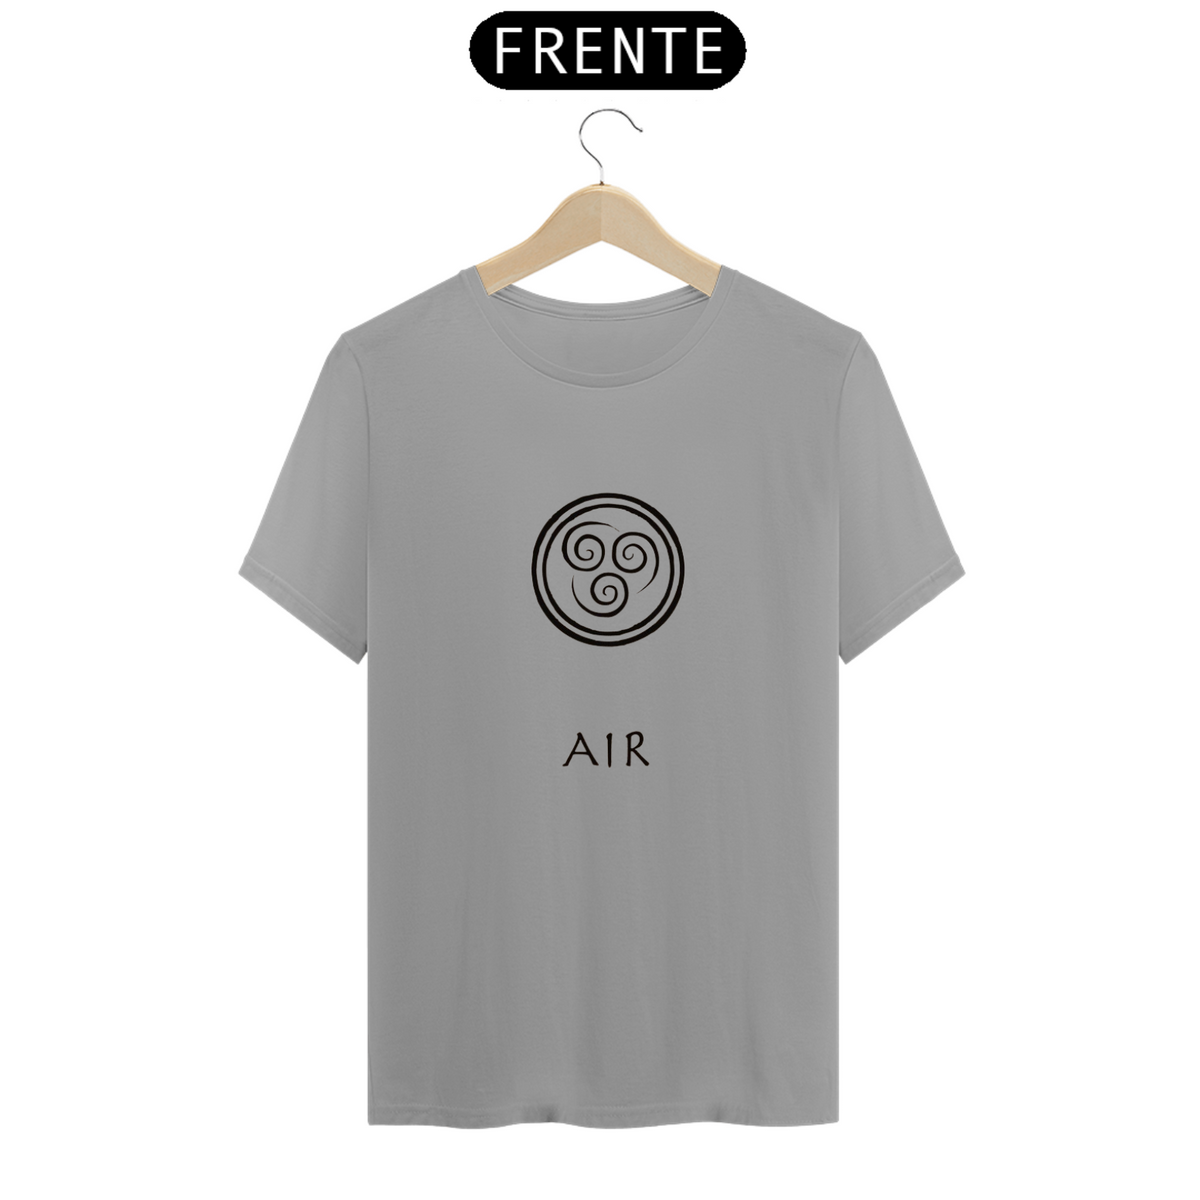 Nome do produto: T-Shirt Air